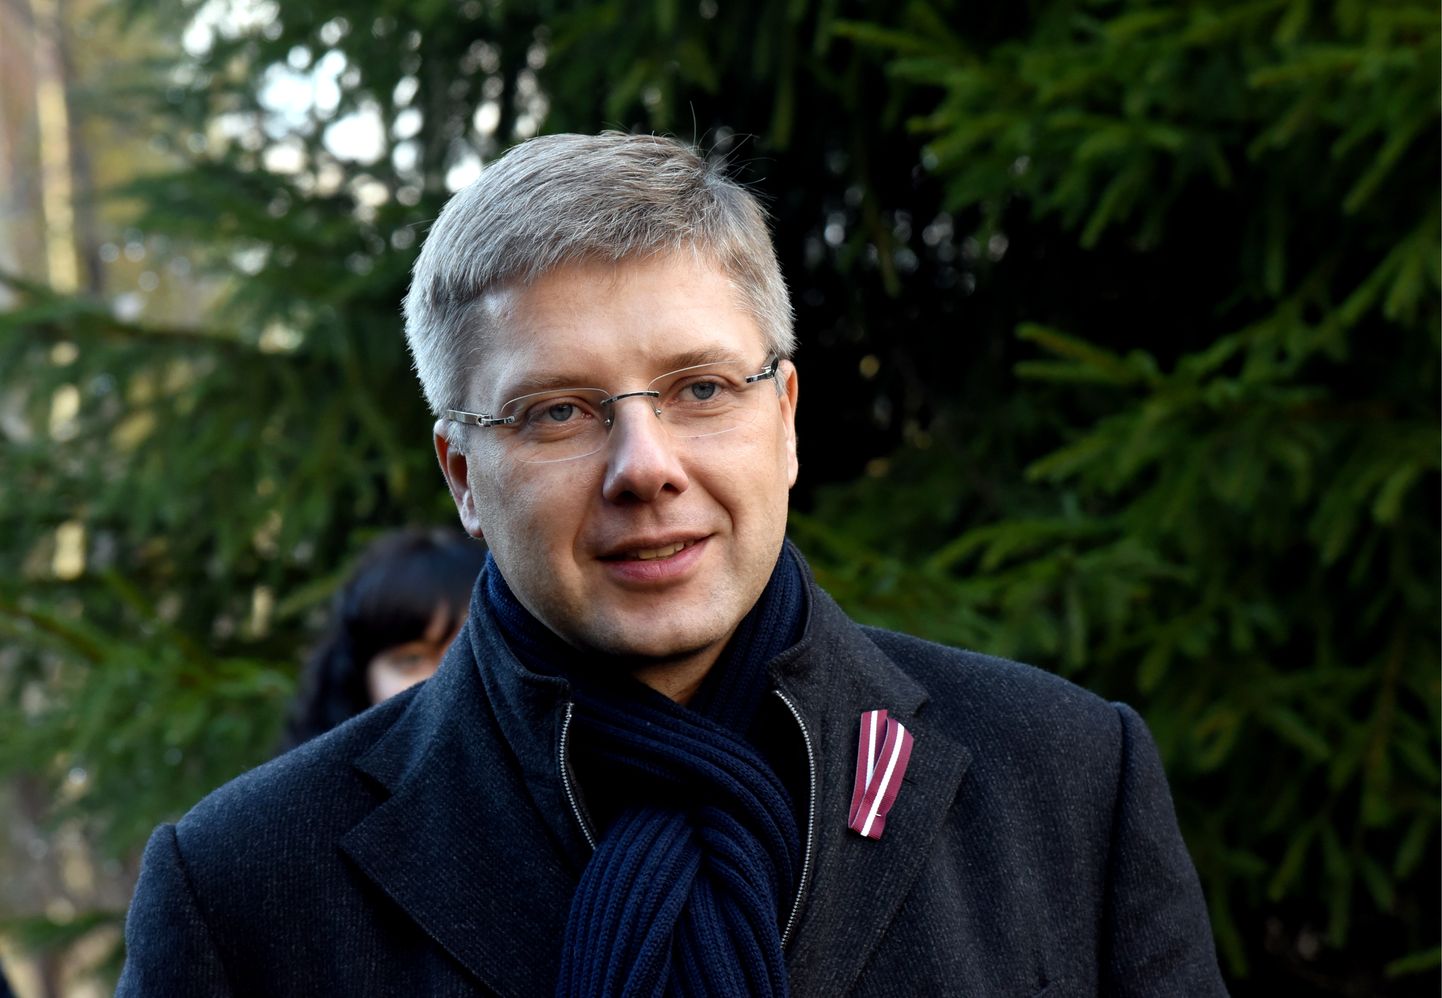 Rīgas domes priekšsēdētājs Nils Ušakovs piedalās Ziemassvētku egles meklējumos Tīreļu mežniecībā, kas tiks uzstādītas Rātslaukumā, Doma laukumā un 11. novembra krastmalā.